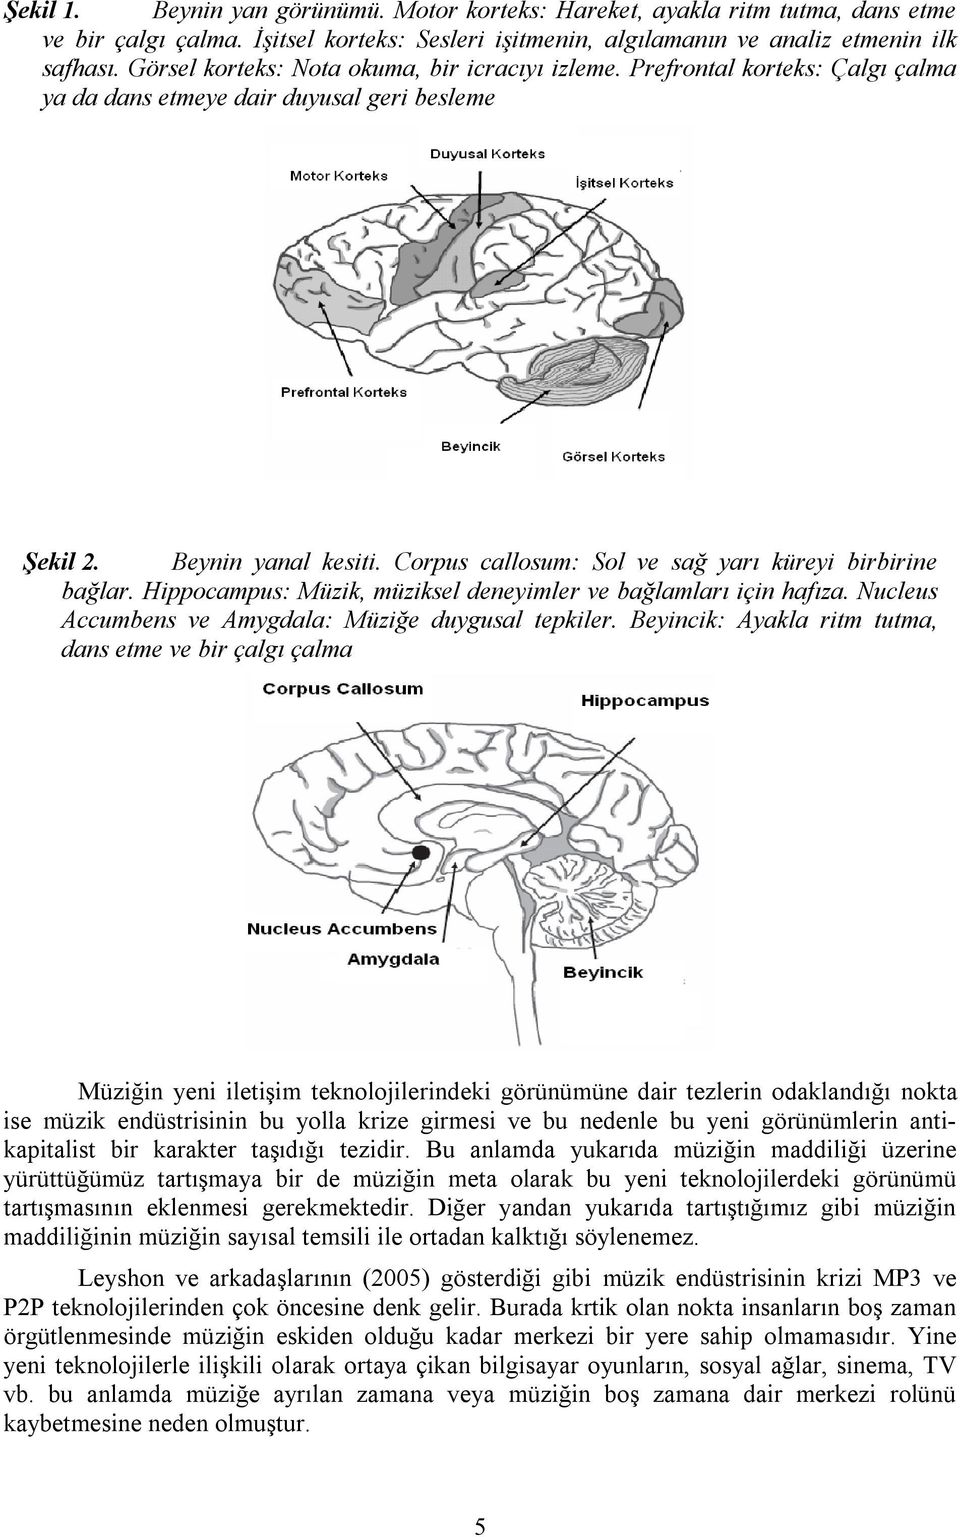 Corpus callosum: Sol ve sağ yarı küreyi birbirine bağlar. Hippocampus: Müzik, müziksel deneyimler ve bağlamları için hafıza. Nucleus Accumbens ve Amygdala: Müziğe duygusal tepkiler.